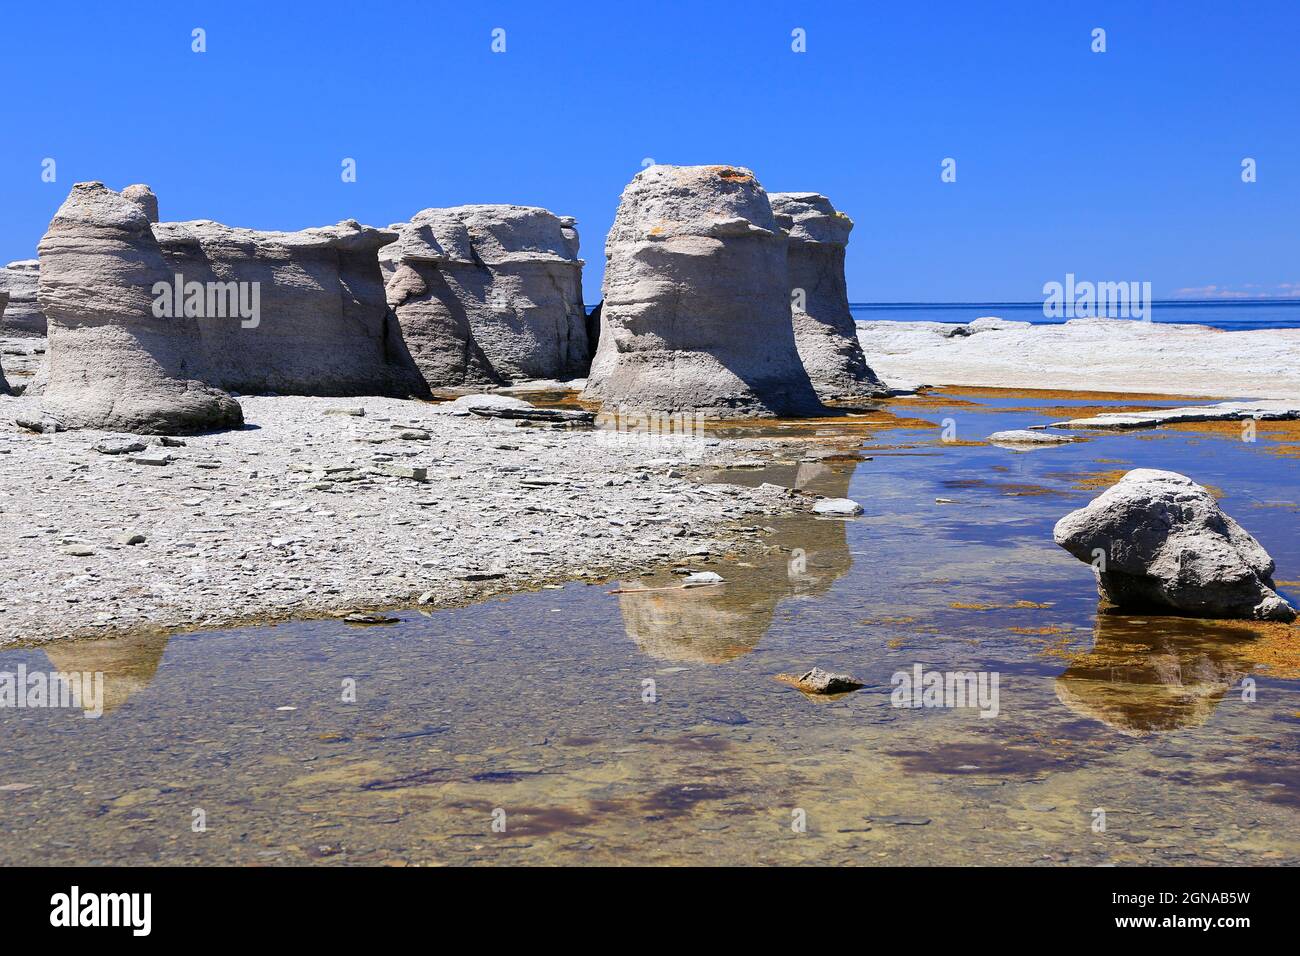 Rocks erosion in Mingan Archipelago, Quebec, Canada Stock Photo